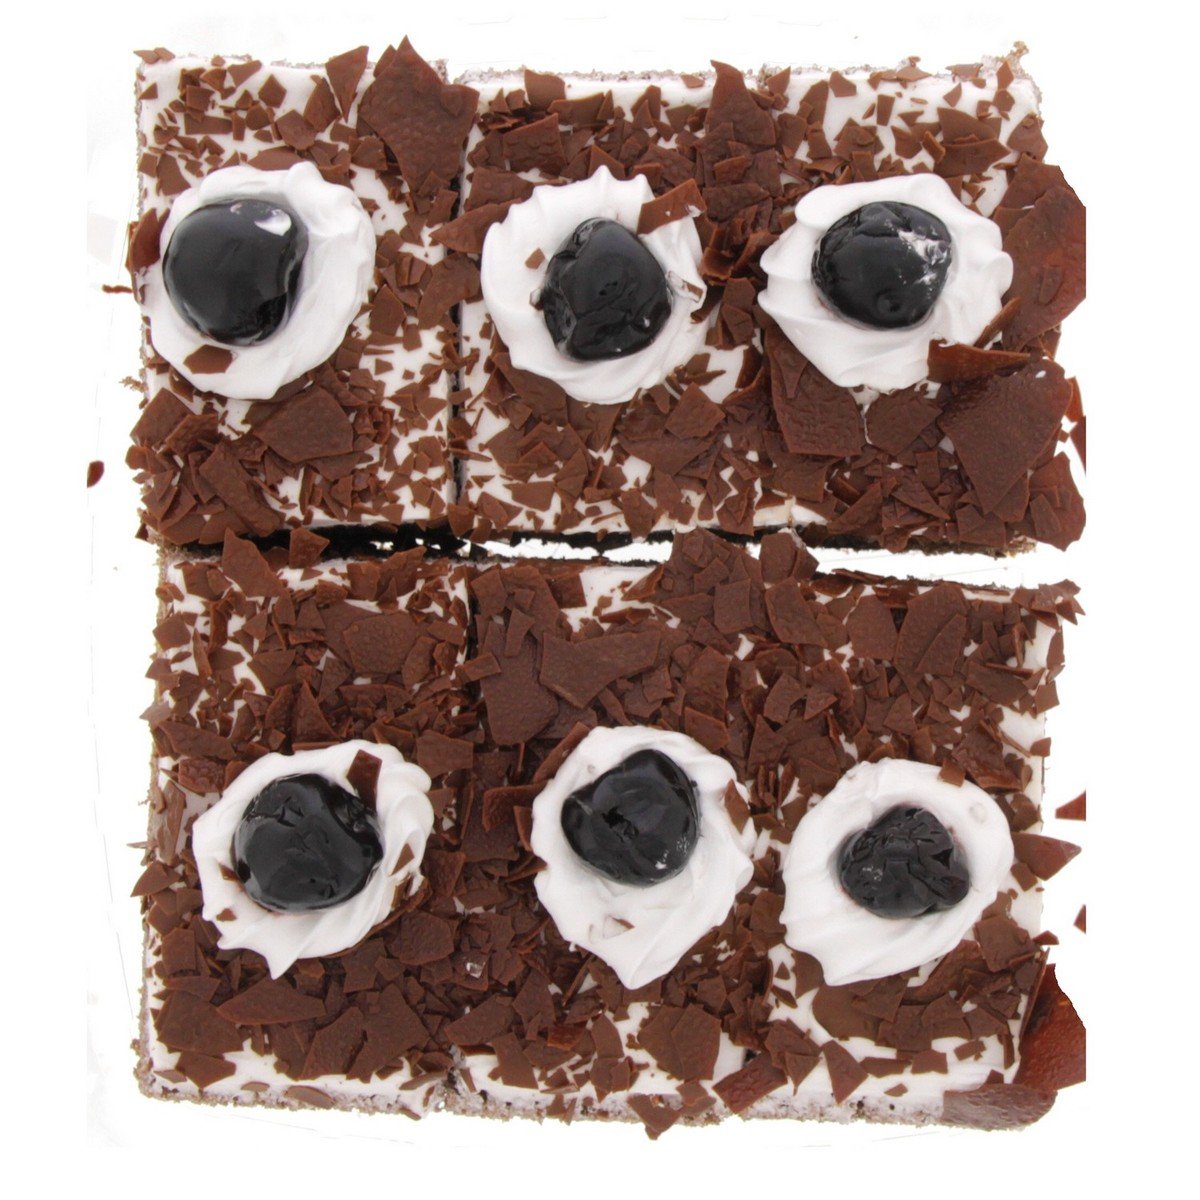 اشتري قم بشراء حلويات الغابة السوداء صغيرة 6 قطع Online at Best Price من الموقع - من لولو هايبر ماركت Pre Pack Cakes في الامارات